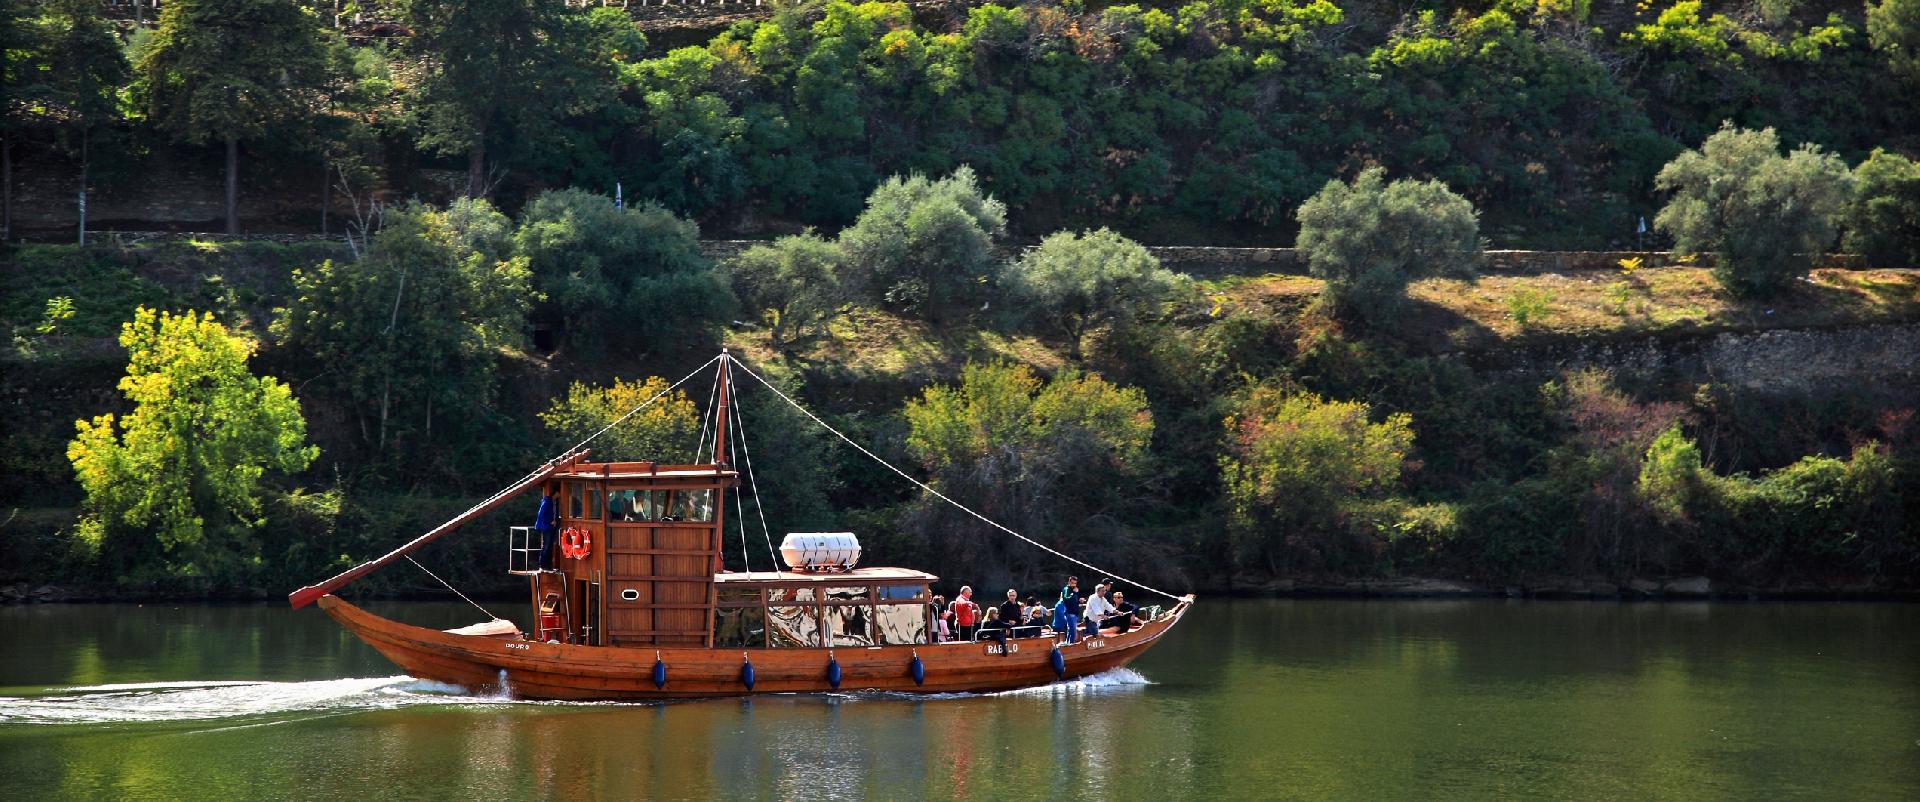 Cruzeiro em barco Rabelo: o tradicional barco de madeira usados para transportar vinho do Porto